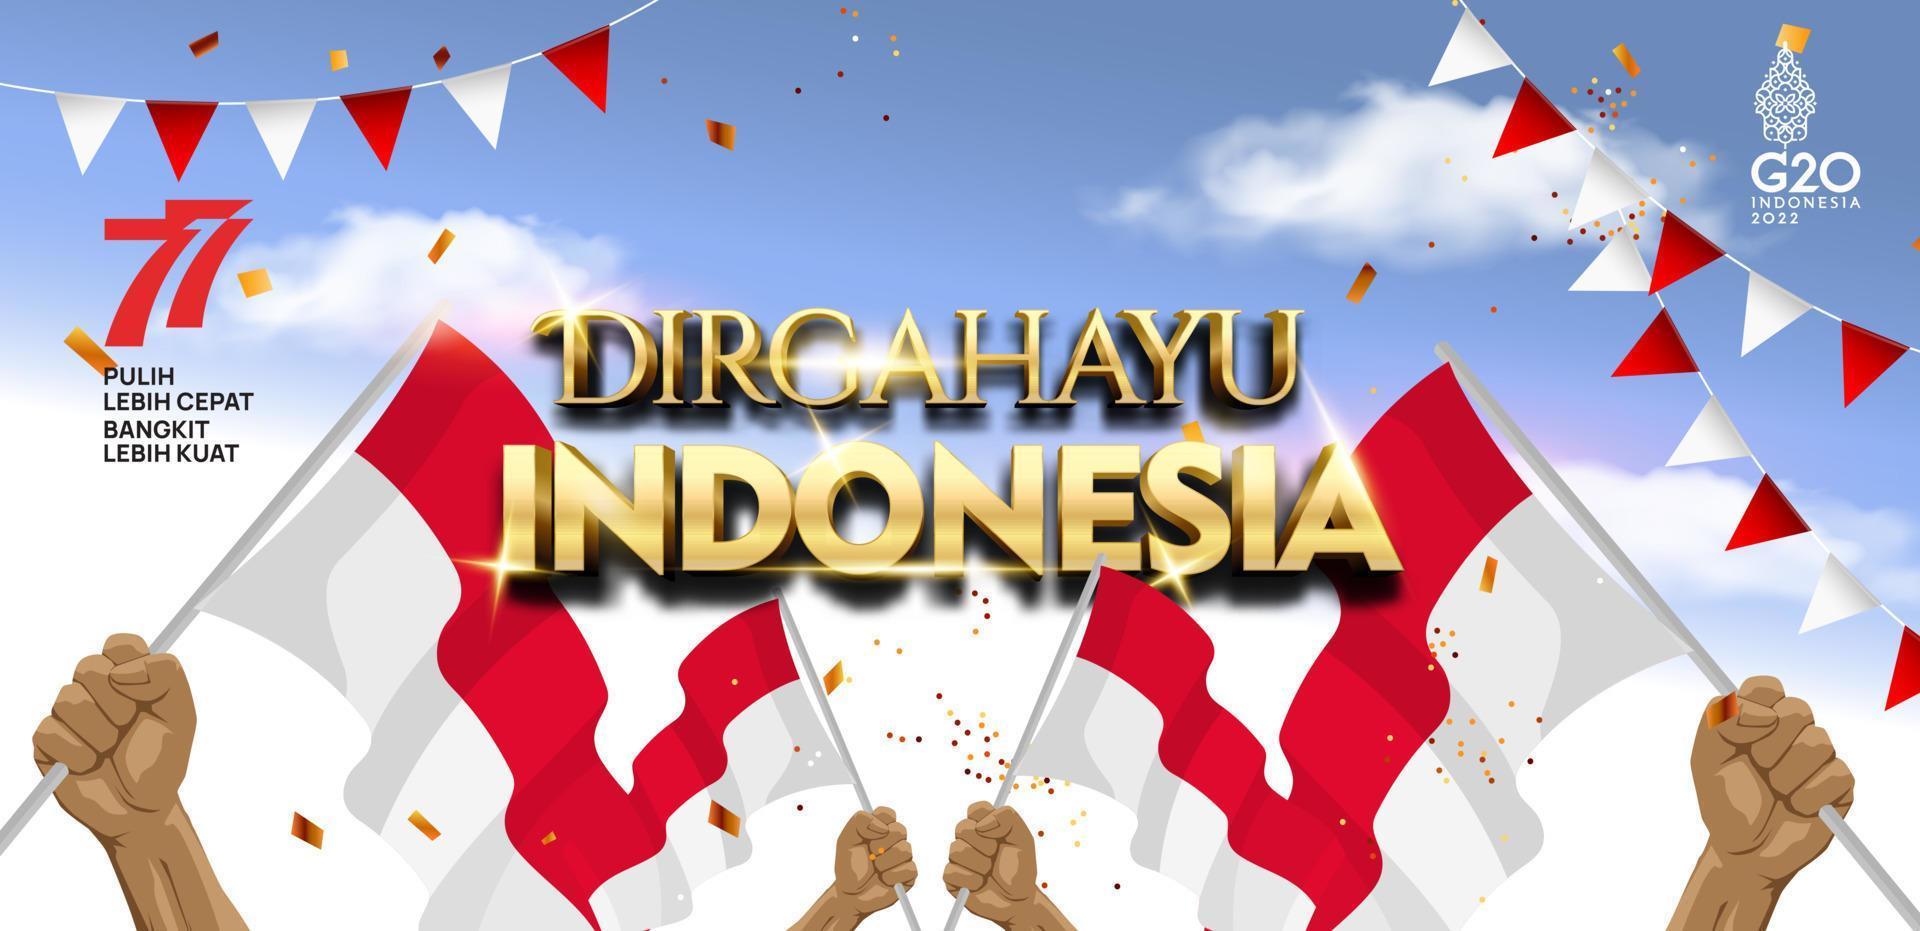 Indonesië 77 jaar. onafhankelijkheidsdag van de republiek indonesië. illustratie poster sjabloonontwerp vector